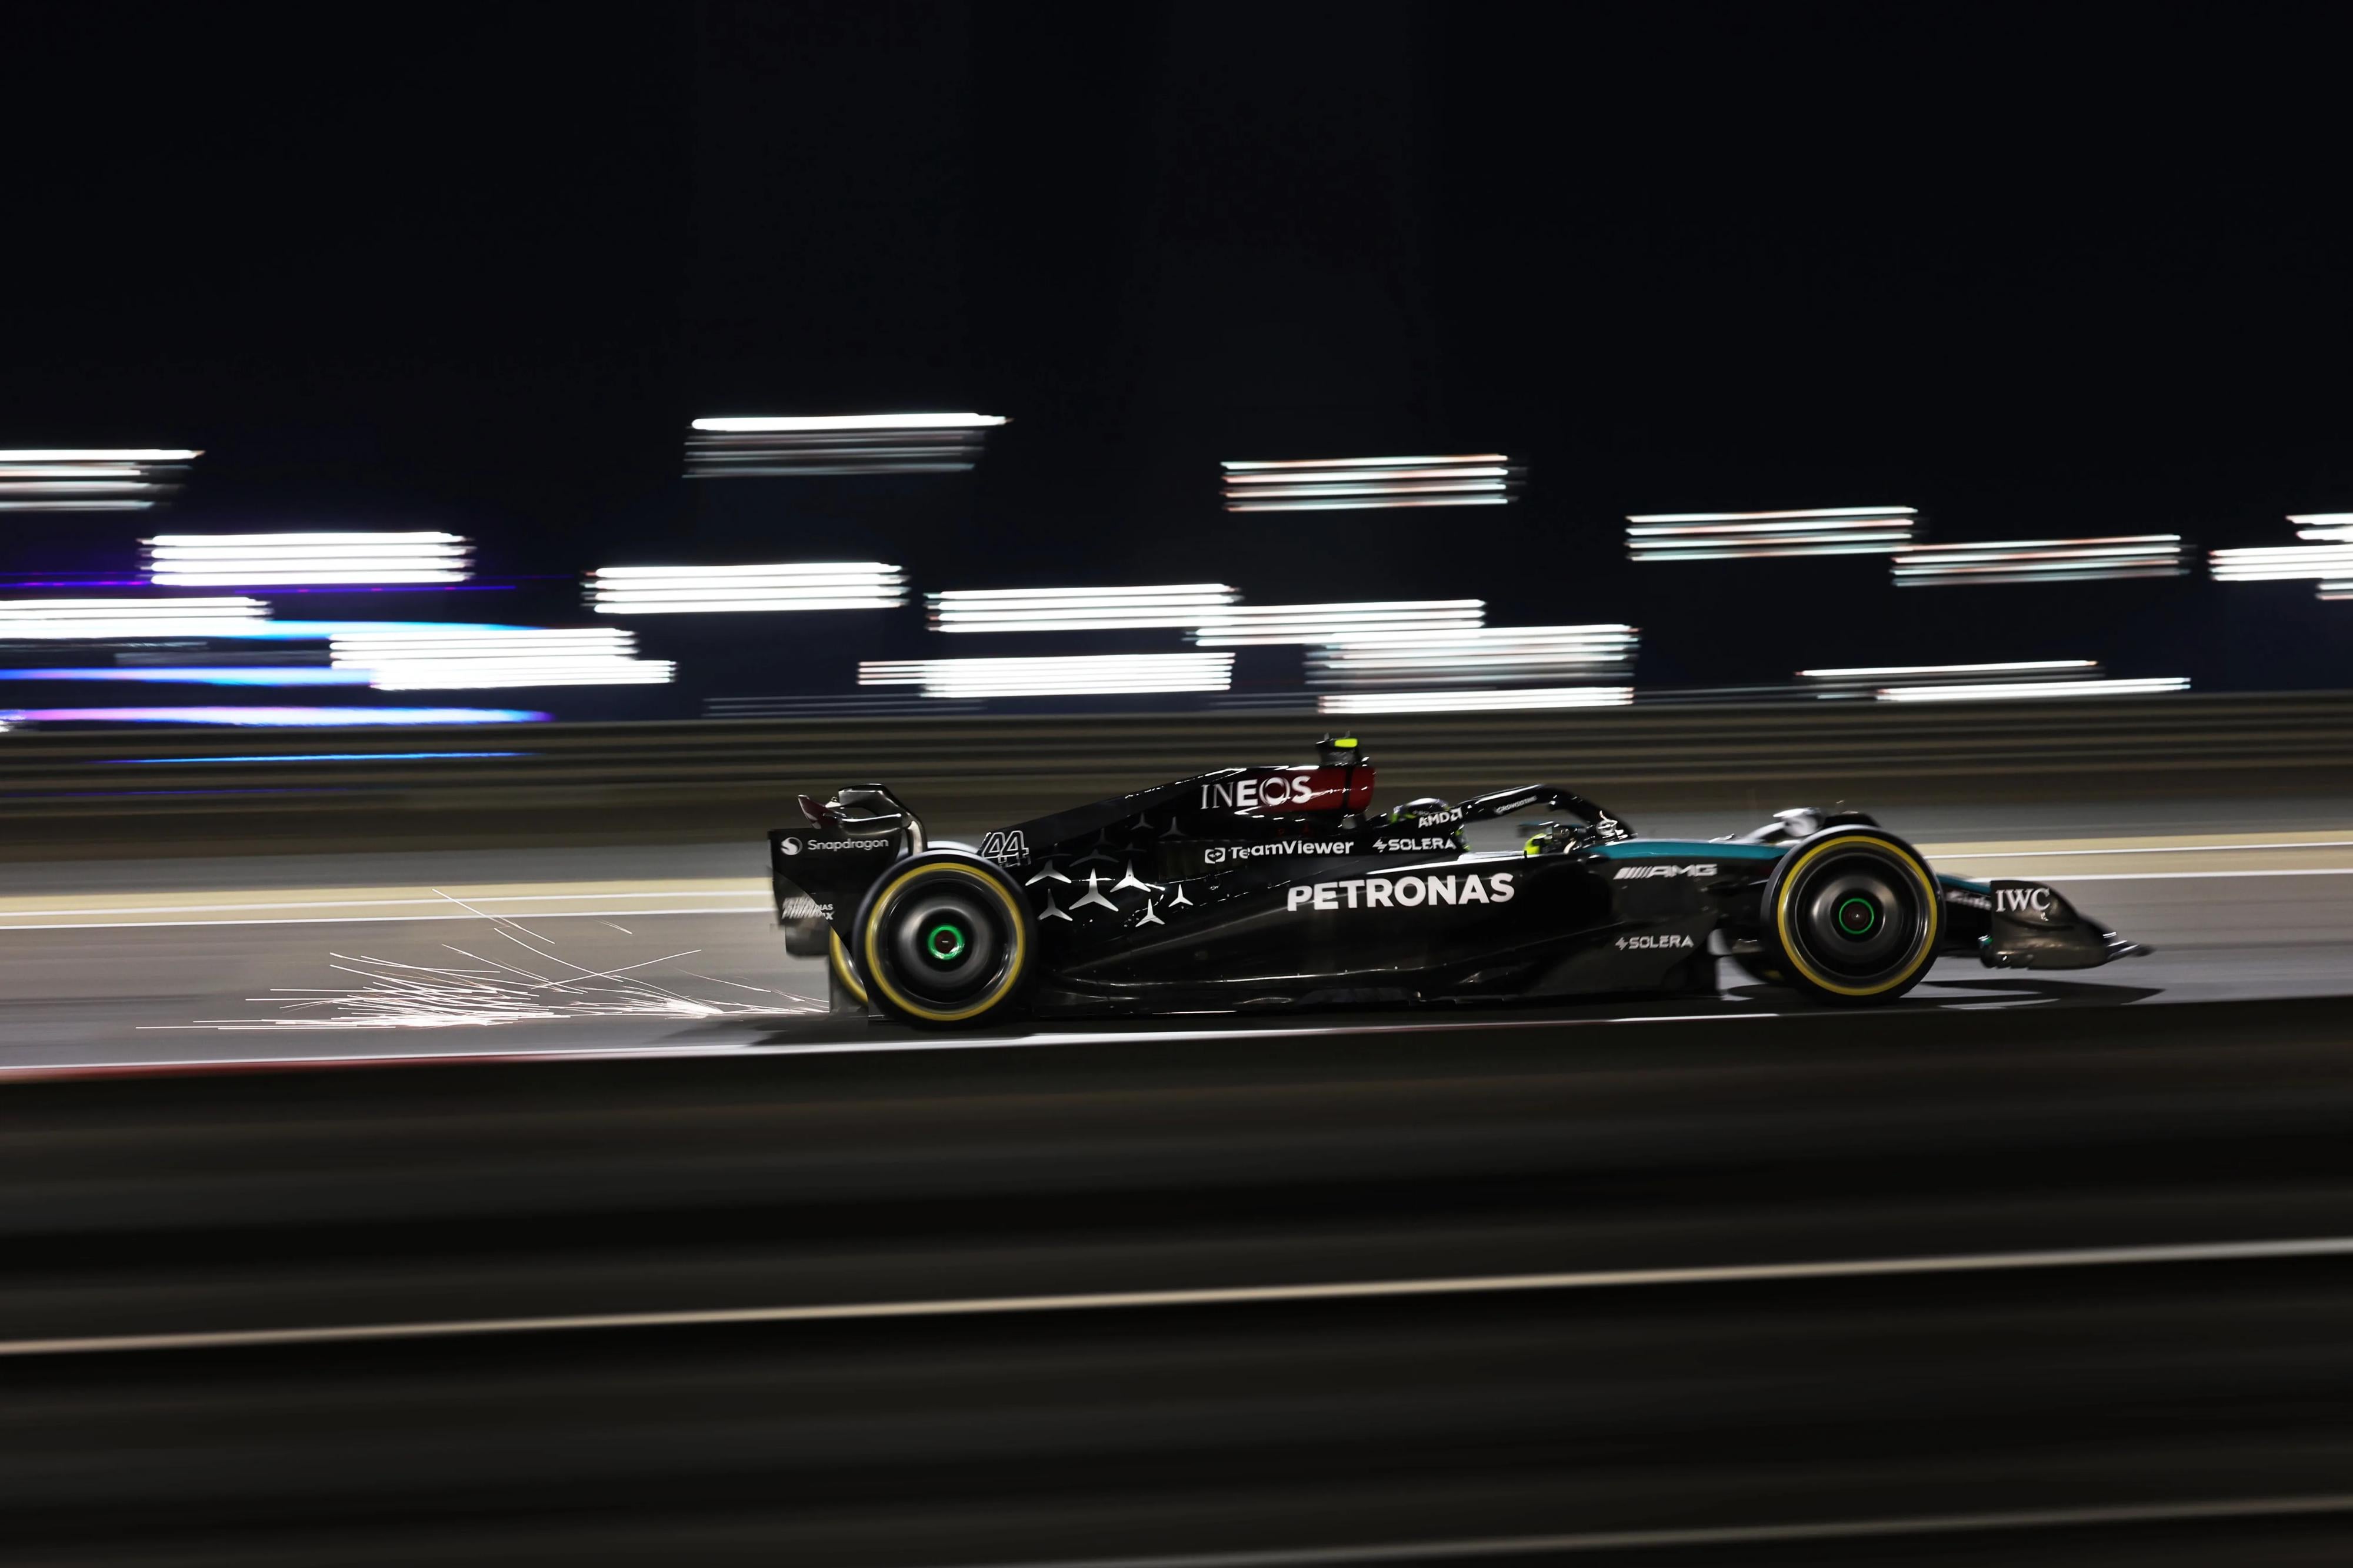 General 4000x2666 Formula 1 Mercedes F1 motorsport side view car sparks motion blur